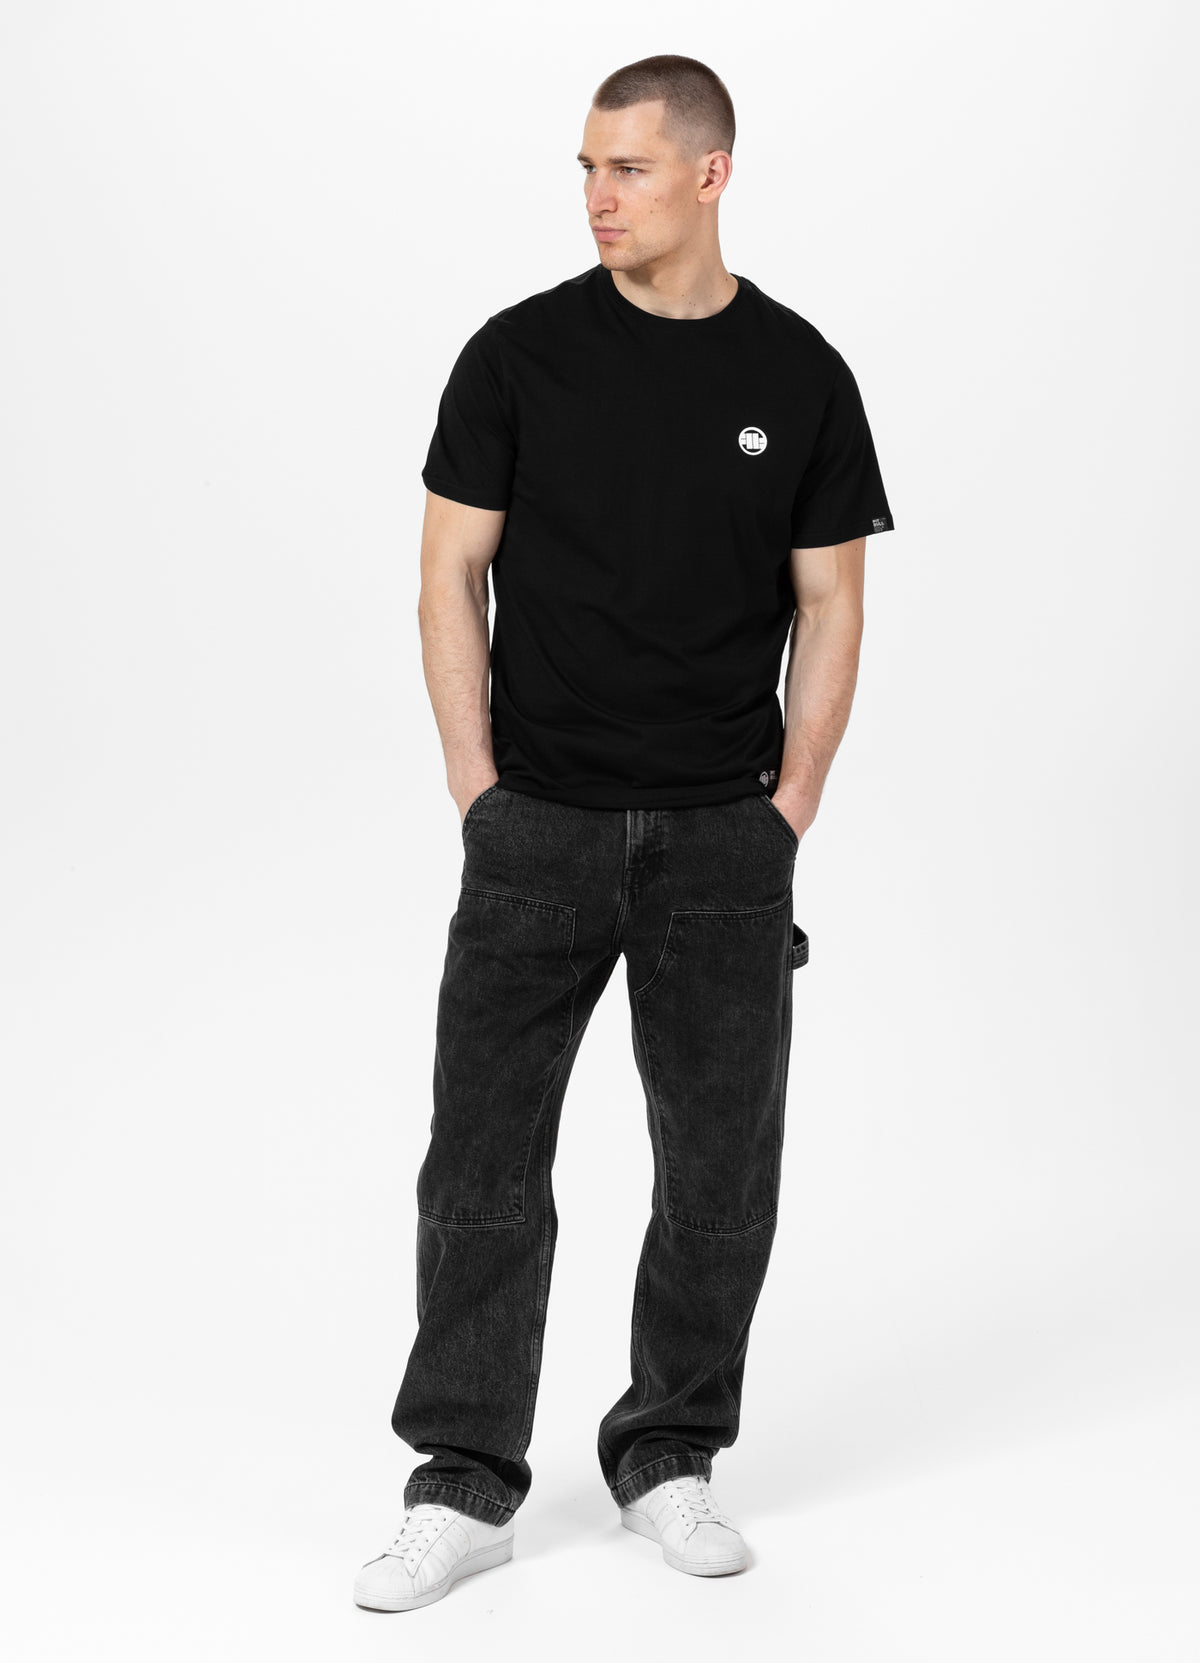 SMALL LOGO Lightweight Black T-shirt